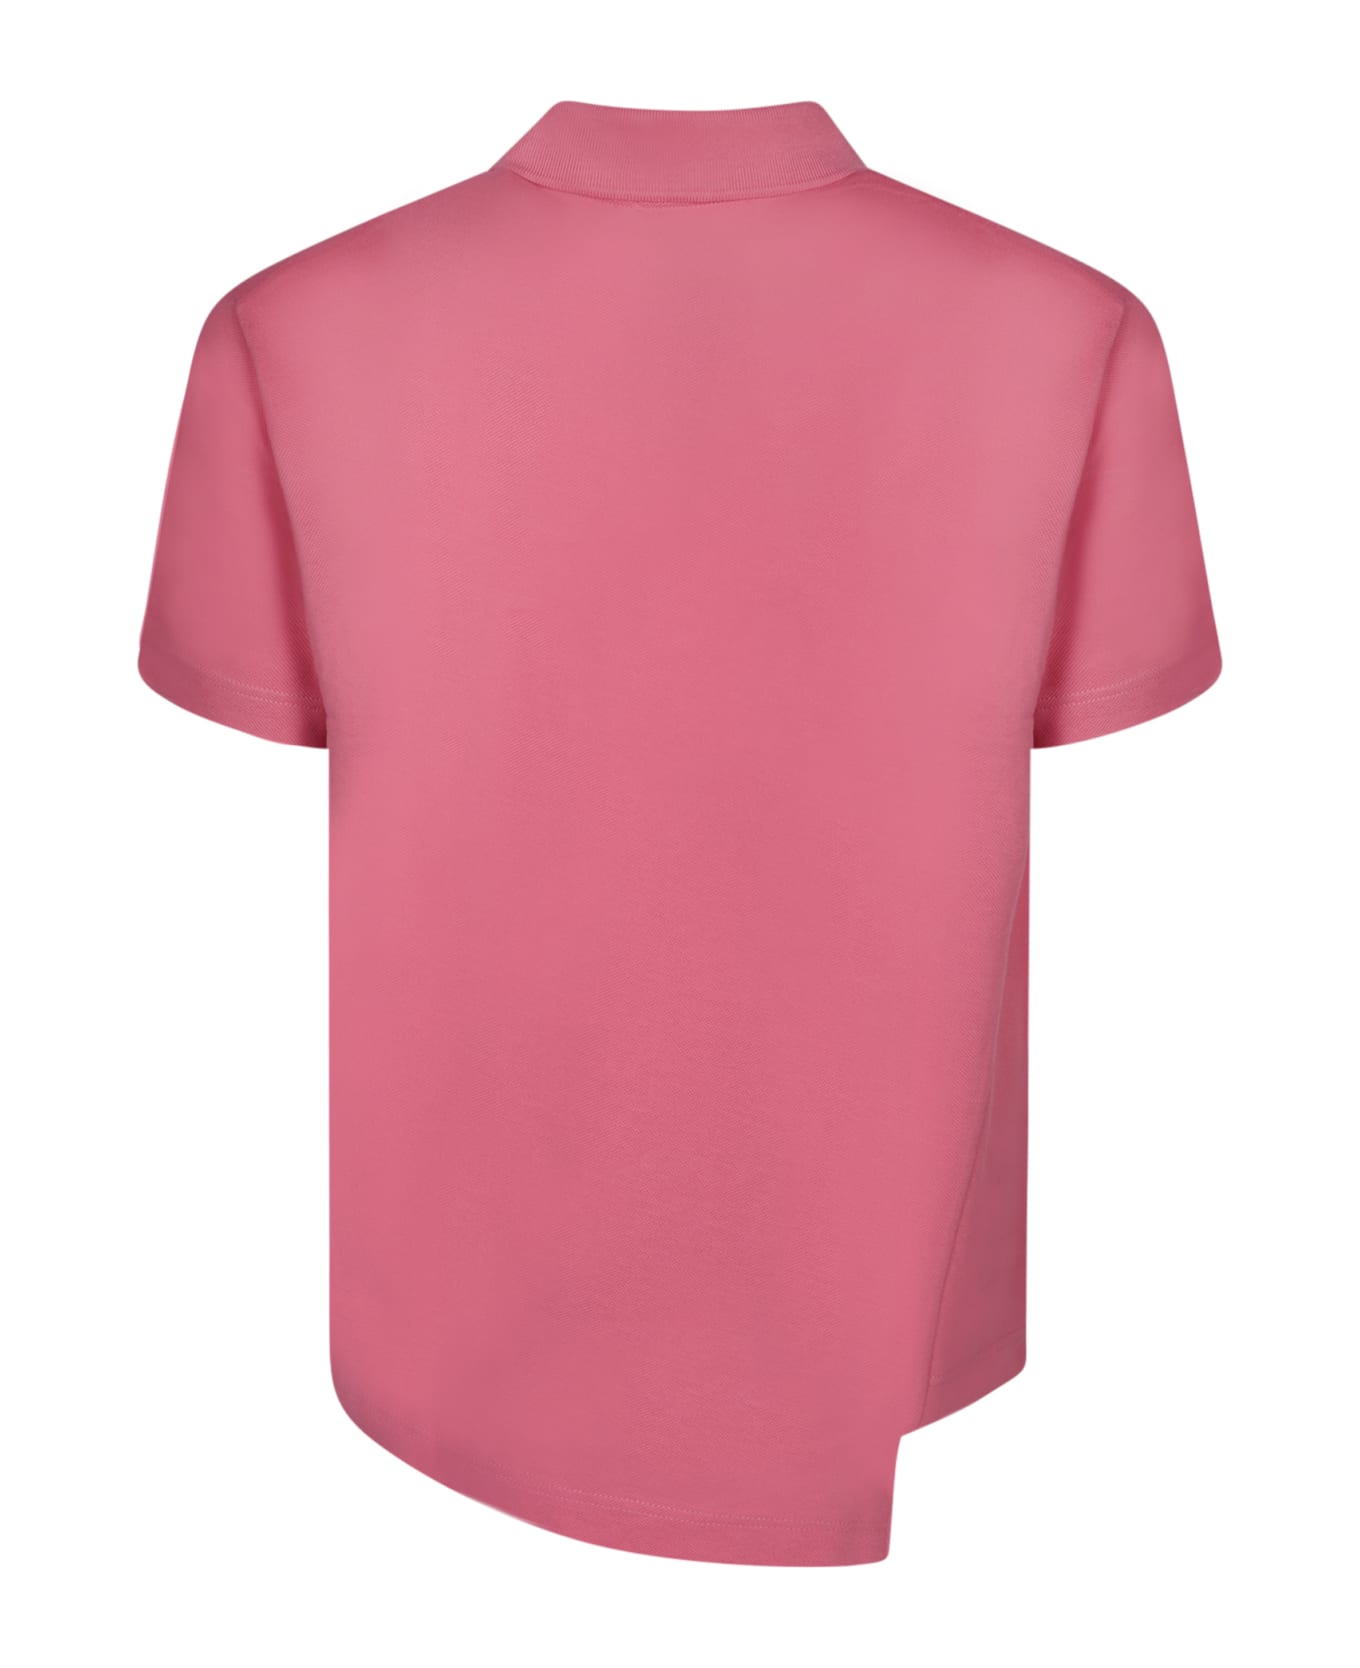 Comme des Garçons Shirt Boss Asymmetric Pink Polo Shirt - Pink